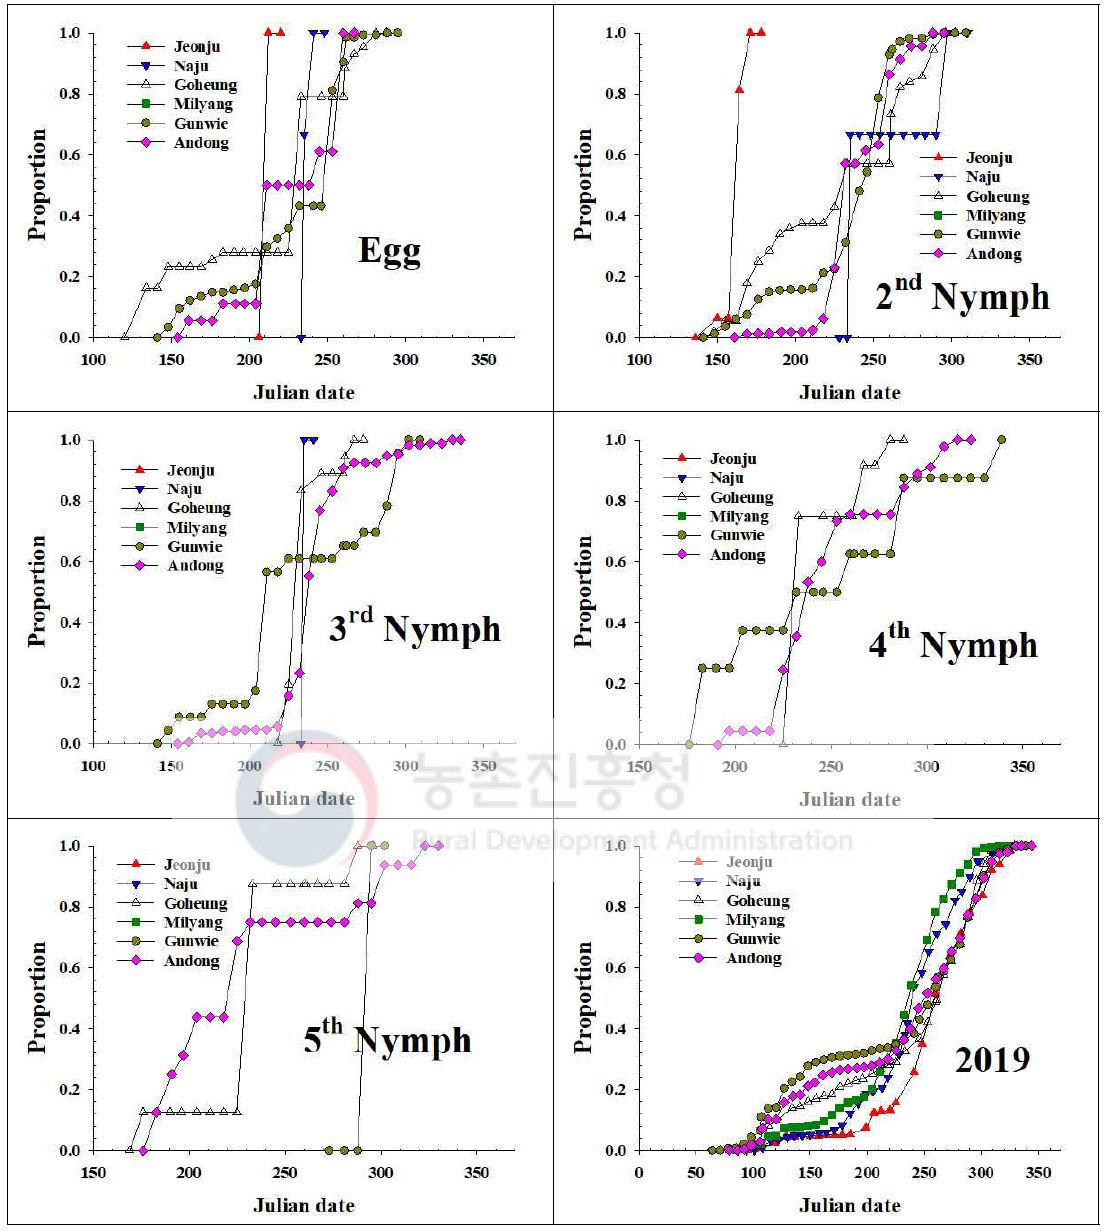 내륙지역 톱다리개미허리노린재 발육단계별 개체수 누적증가 지역간 비교(2019)